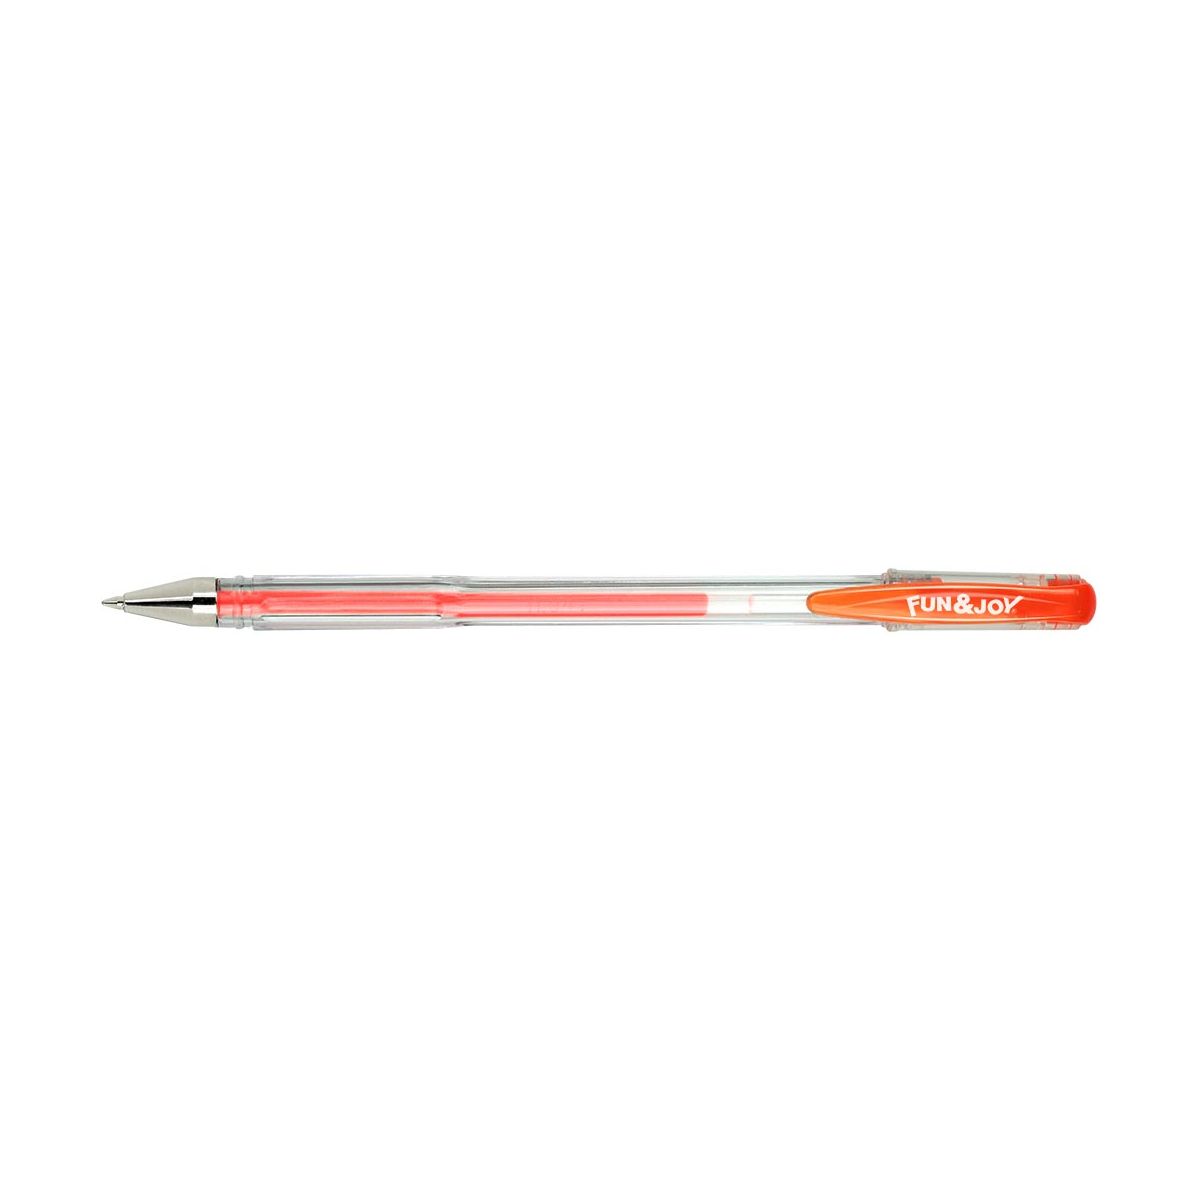 Długopis żelowy Fun&Joy fluorescencyjny mix 0,8mm (FJ-G06F)